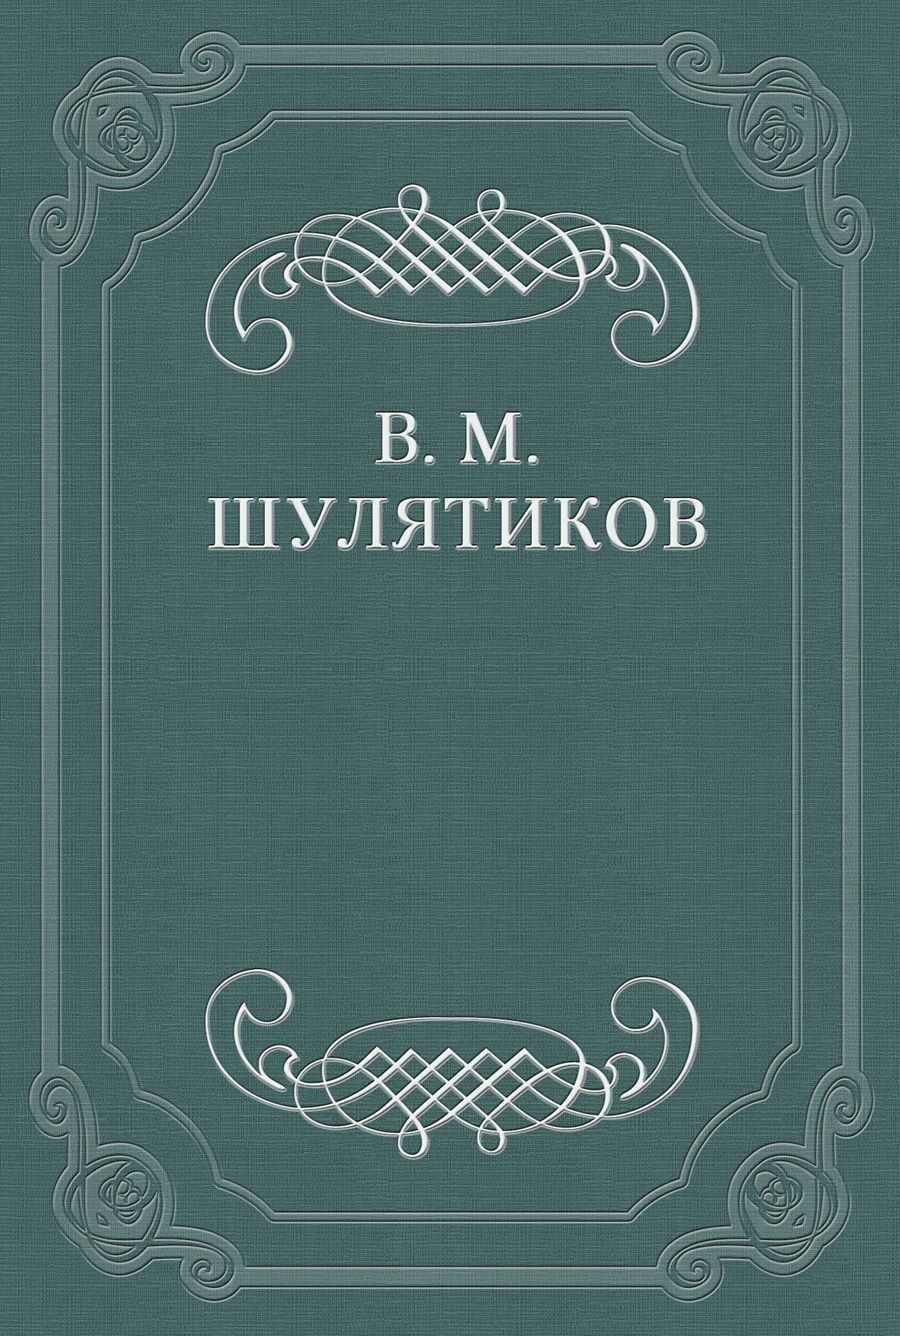 Книга Литературный хищник из серии , созданная Владимир Шулятиков, может относится к жанру Критика. Стоимость книги Литературный хищник  с идентификатором 663045 составляет 9.99 руб.